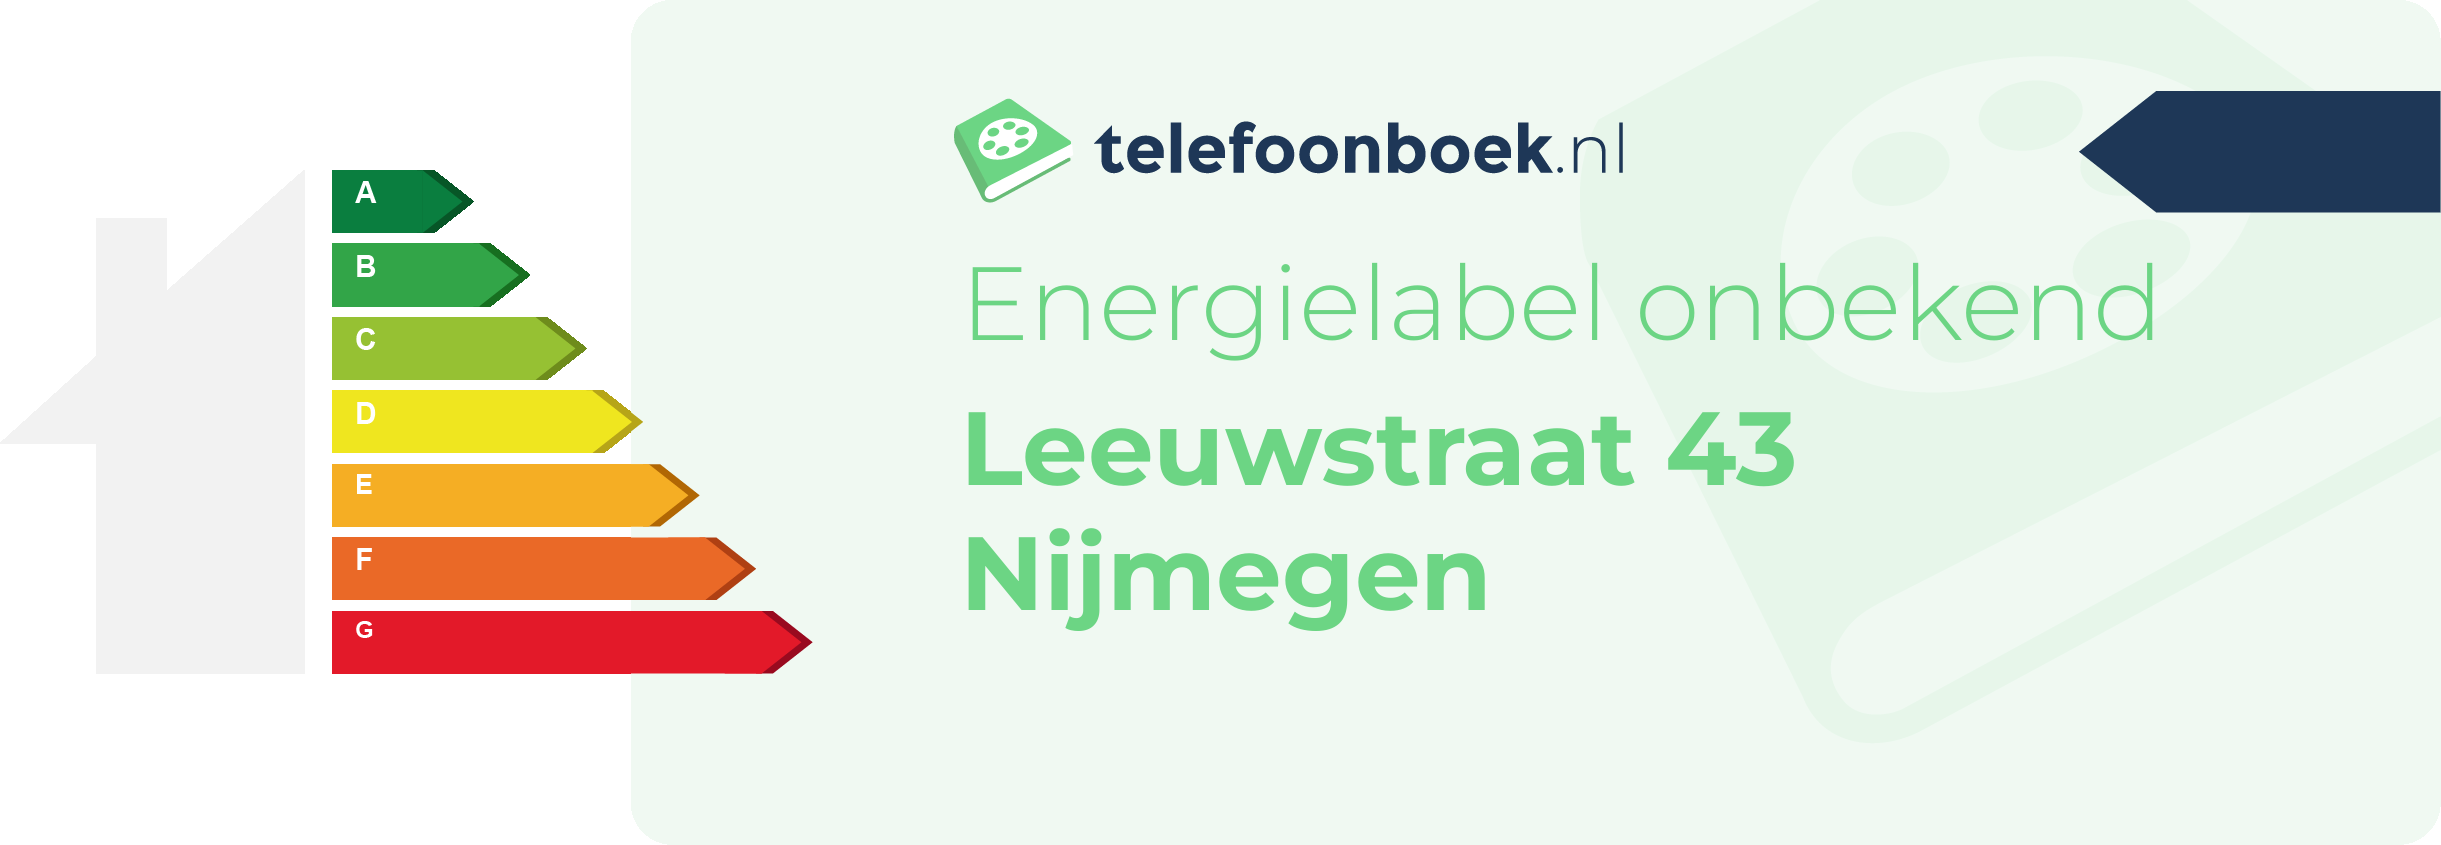 Energielabel Leeuwstraat 43 Nijmegen